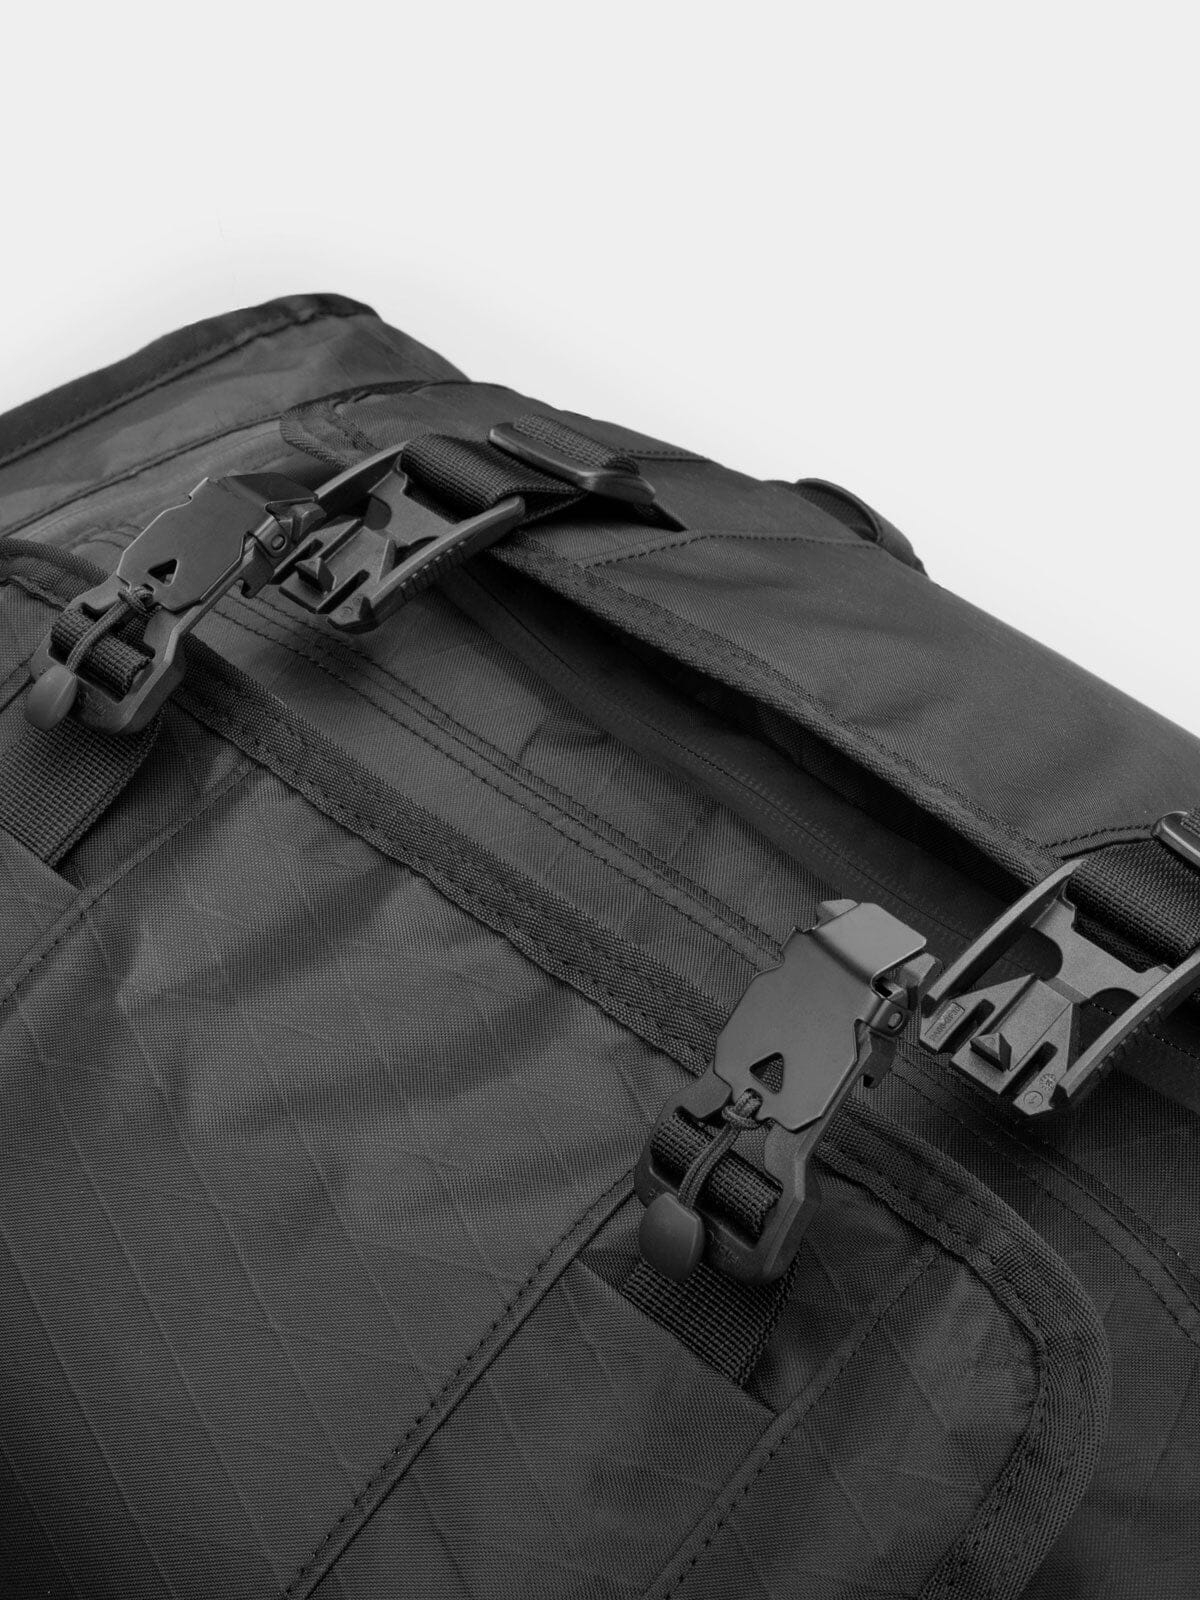 Rhake Weatherproof Laptop Backpack Black Camo